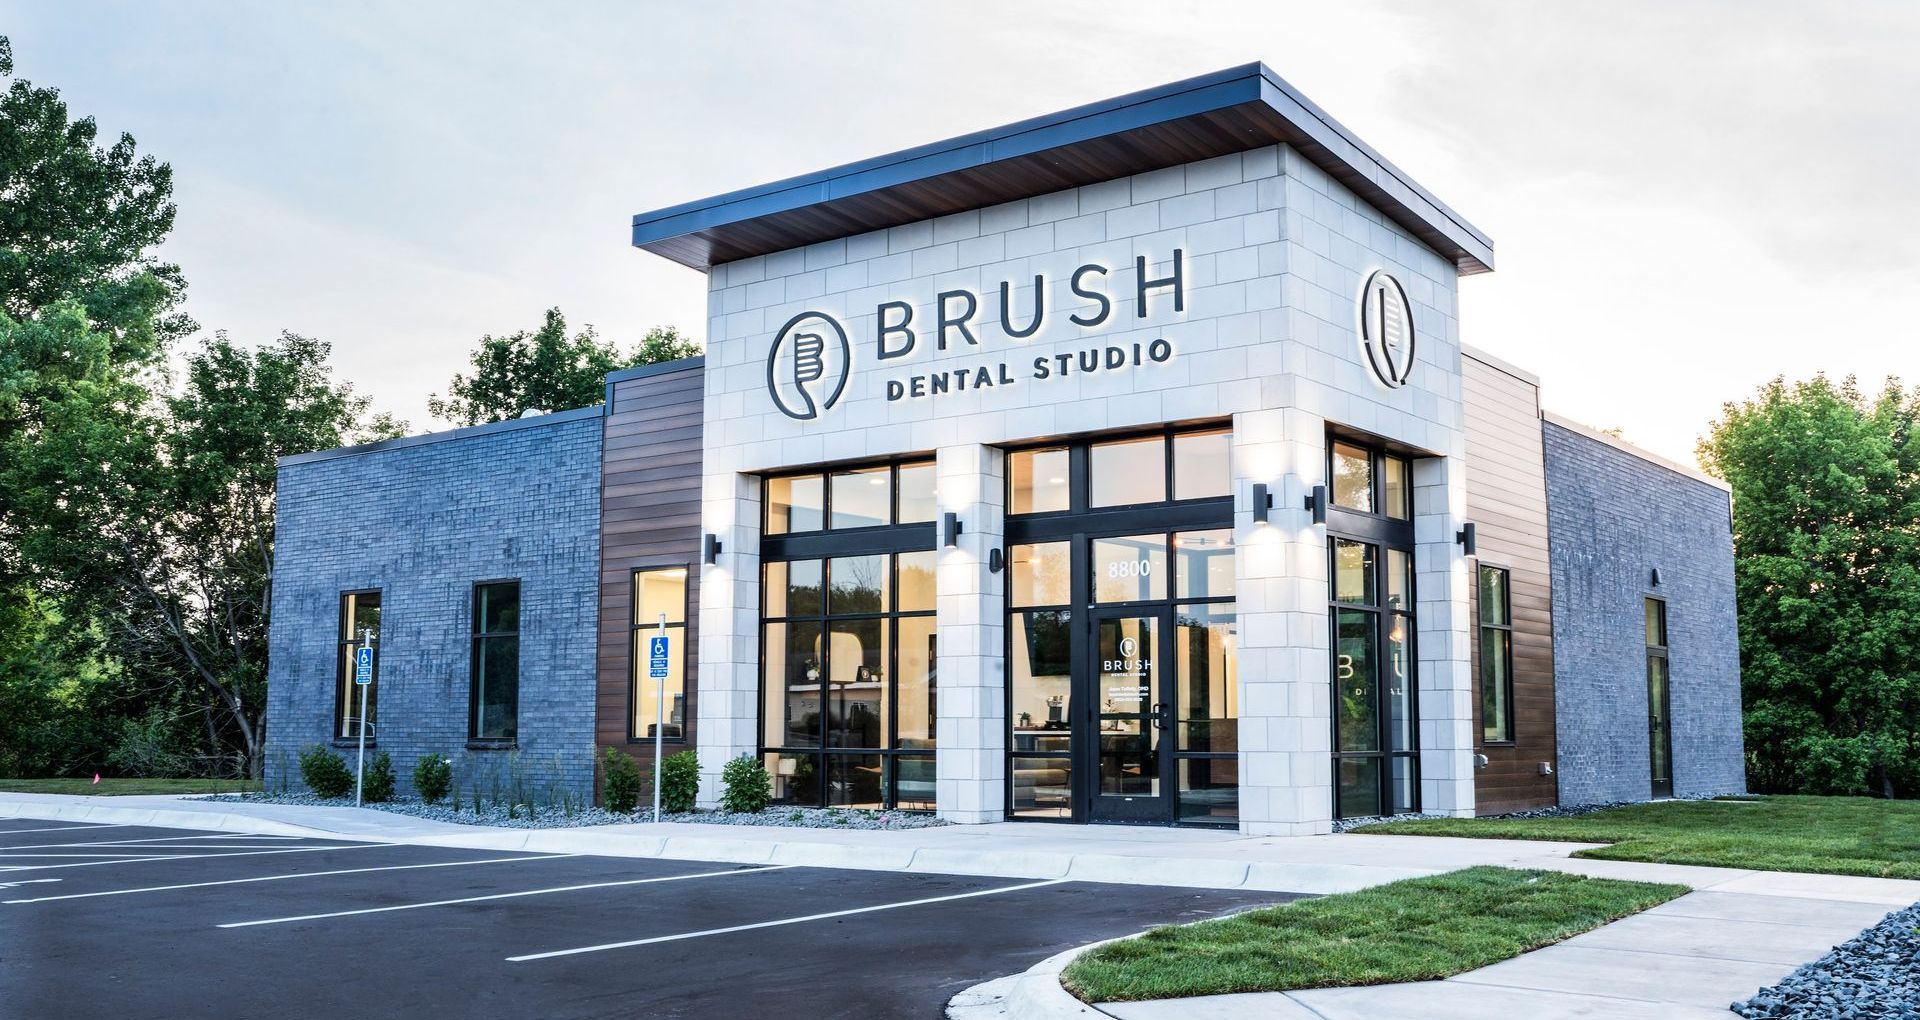 Brush Dental Studio - Office